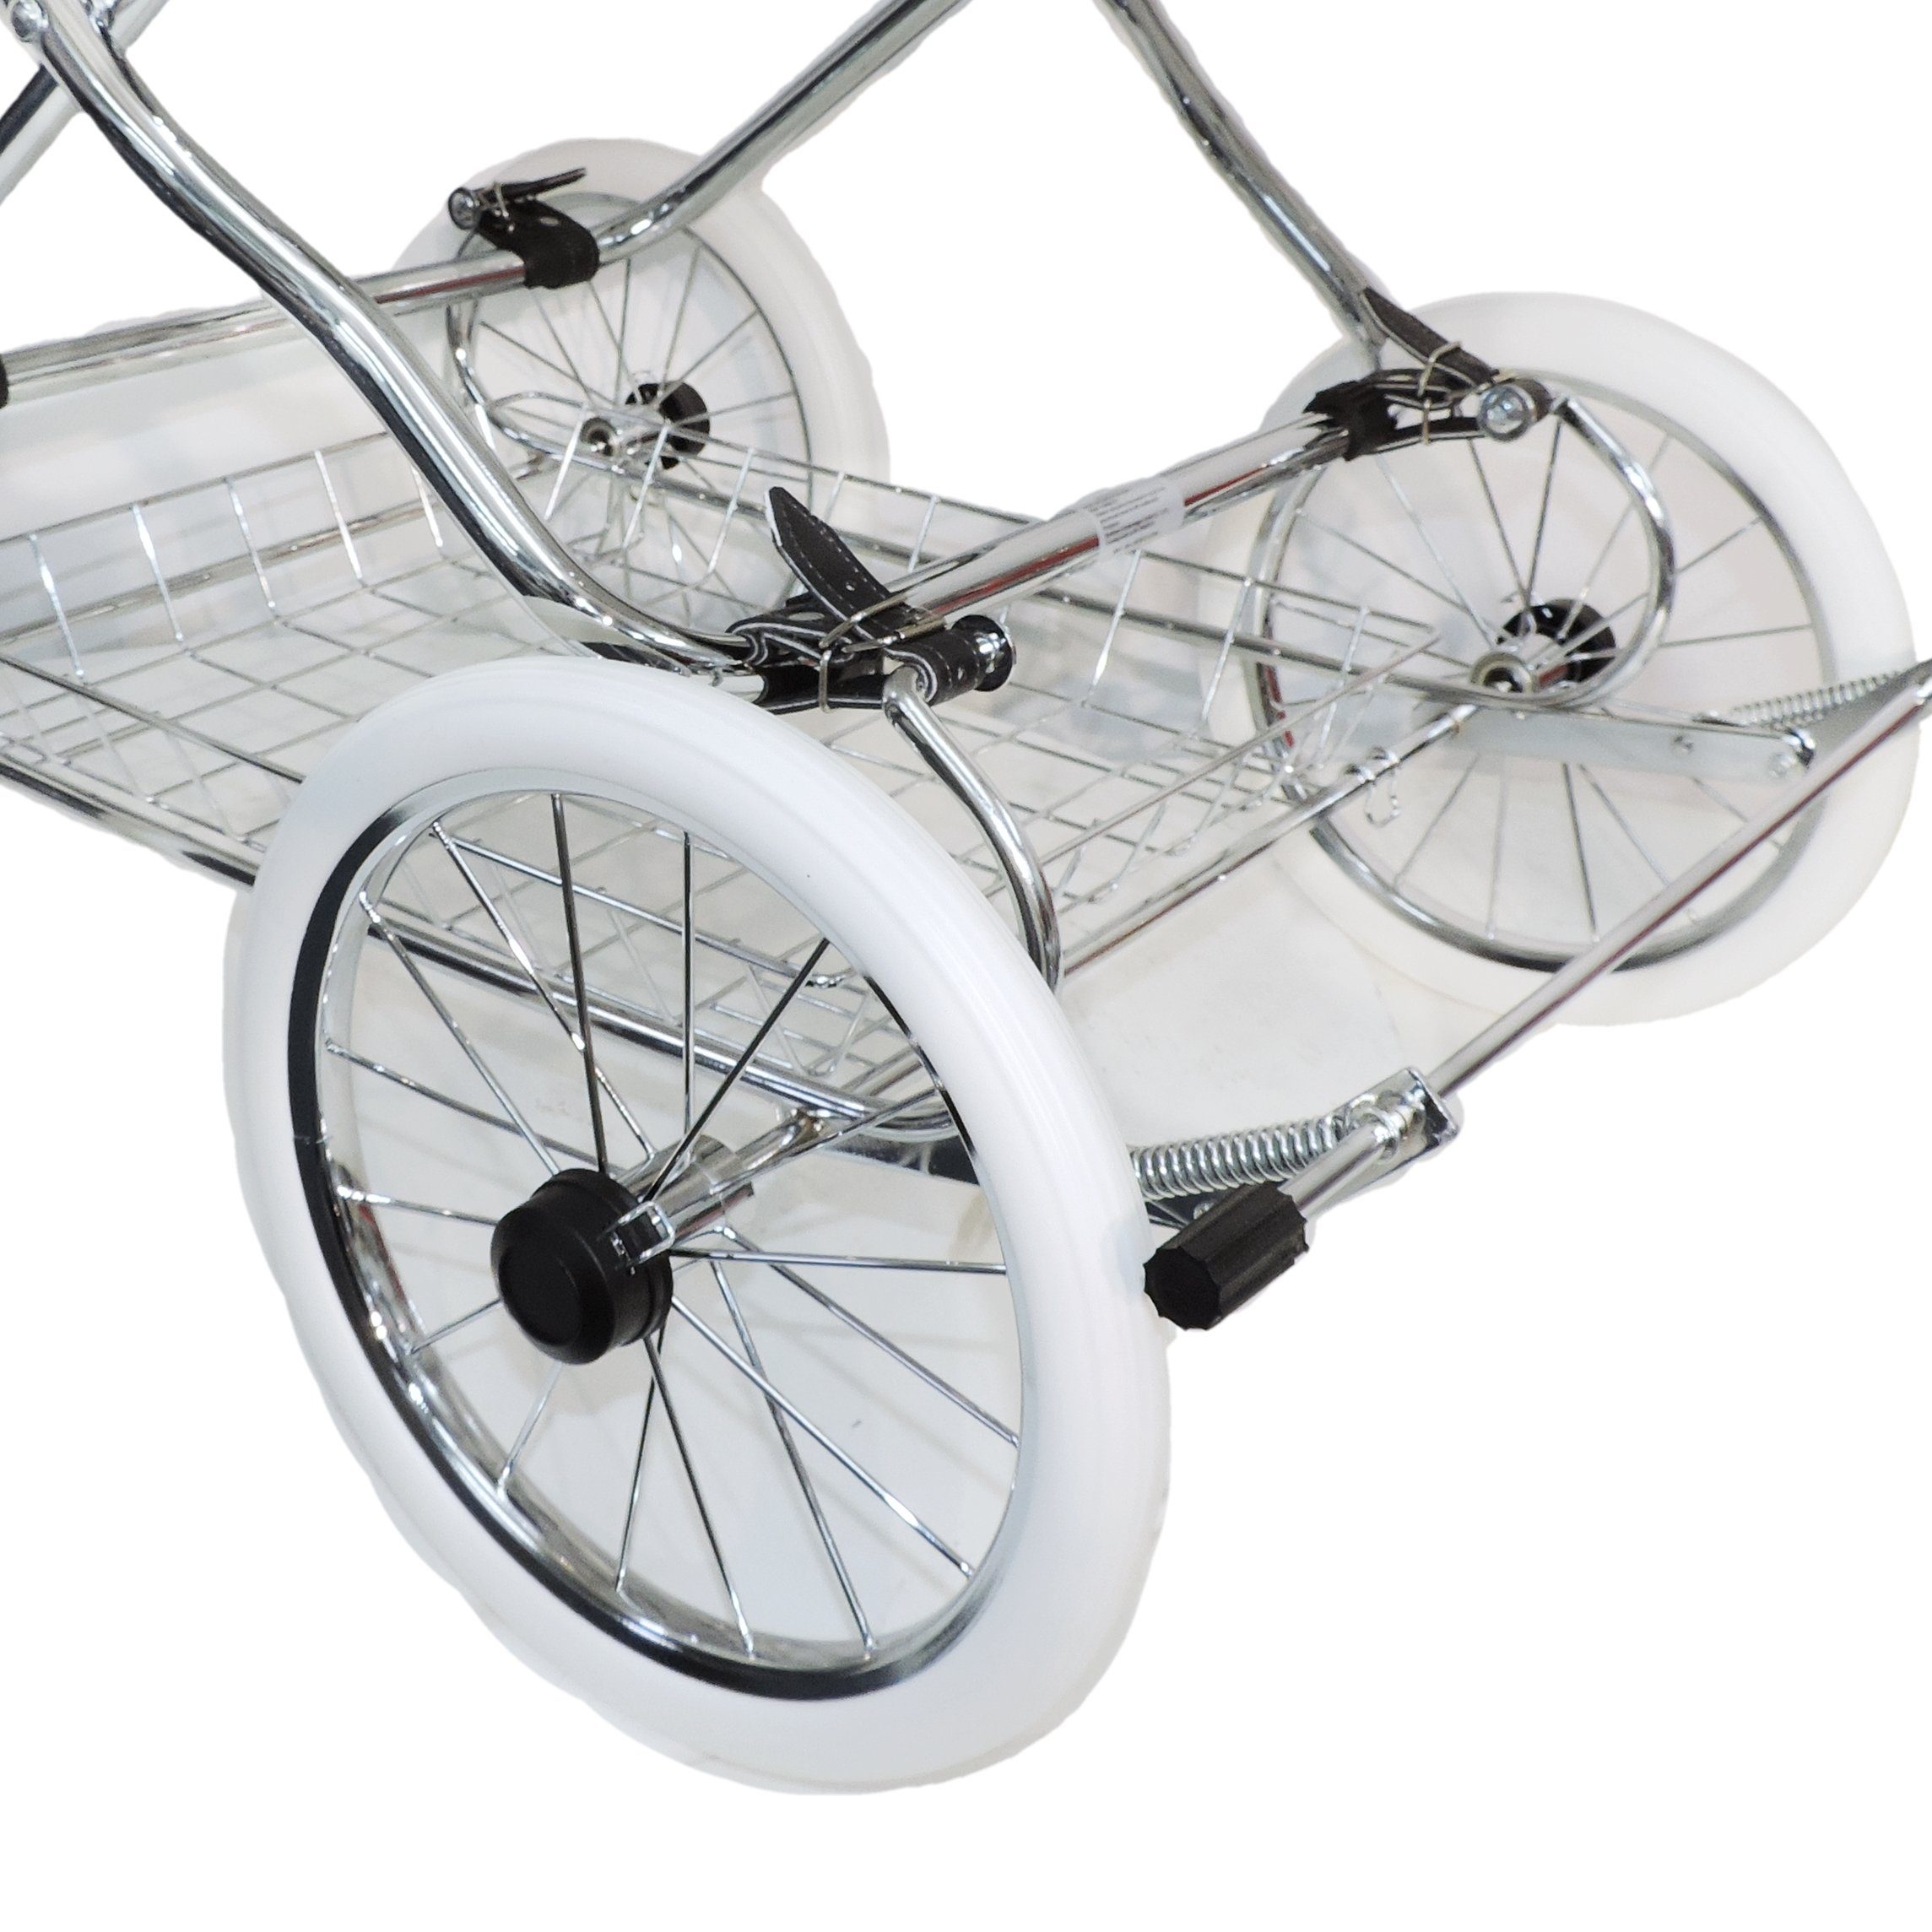 Kombi-Kinderwagen umbaubar marineblau Eichhorn - made in Kinderwagen EU Designer, zum mit Sportwagen EVA-Vollmaterial-Rädern,